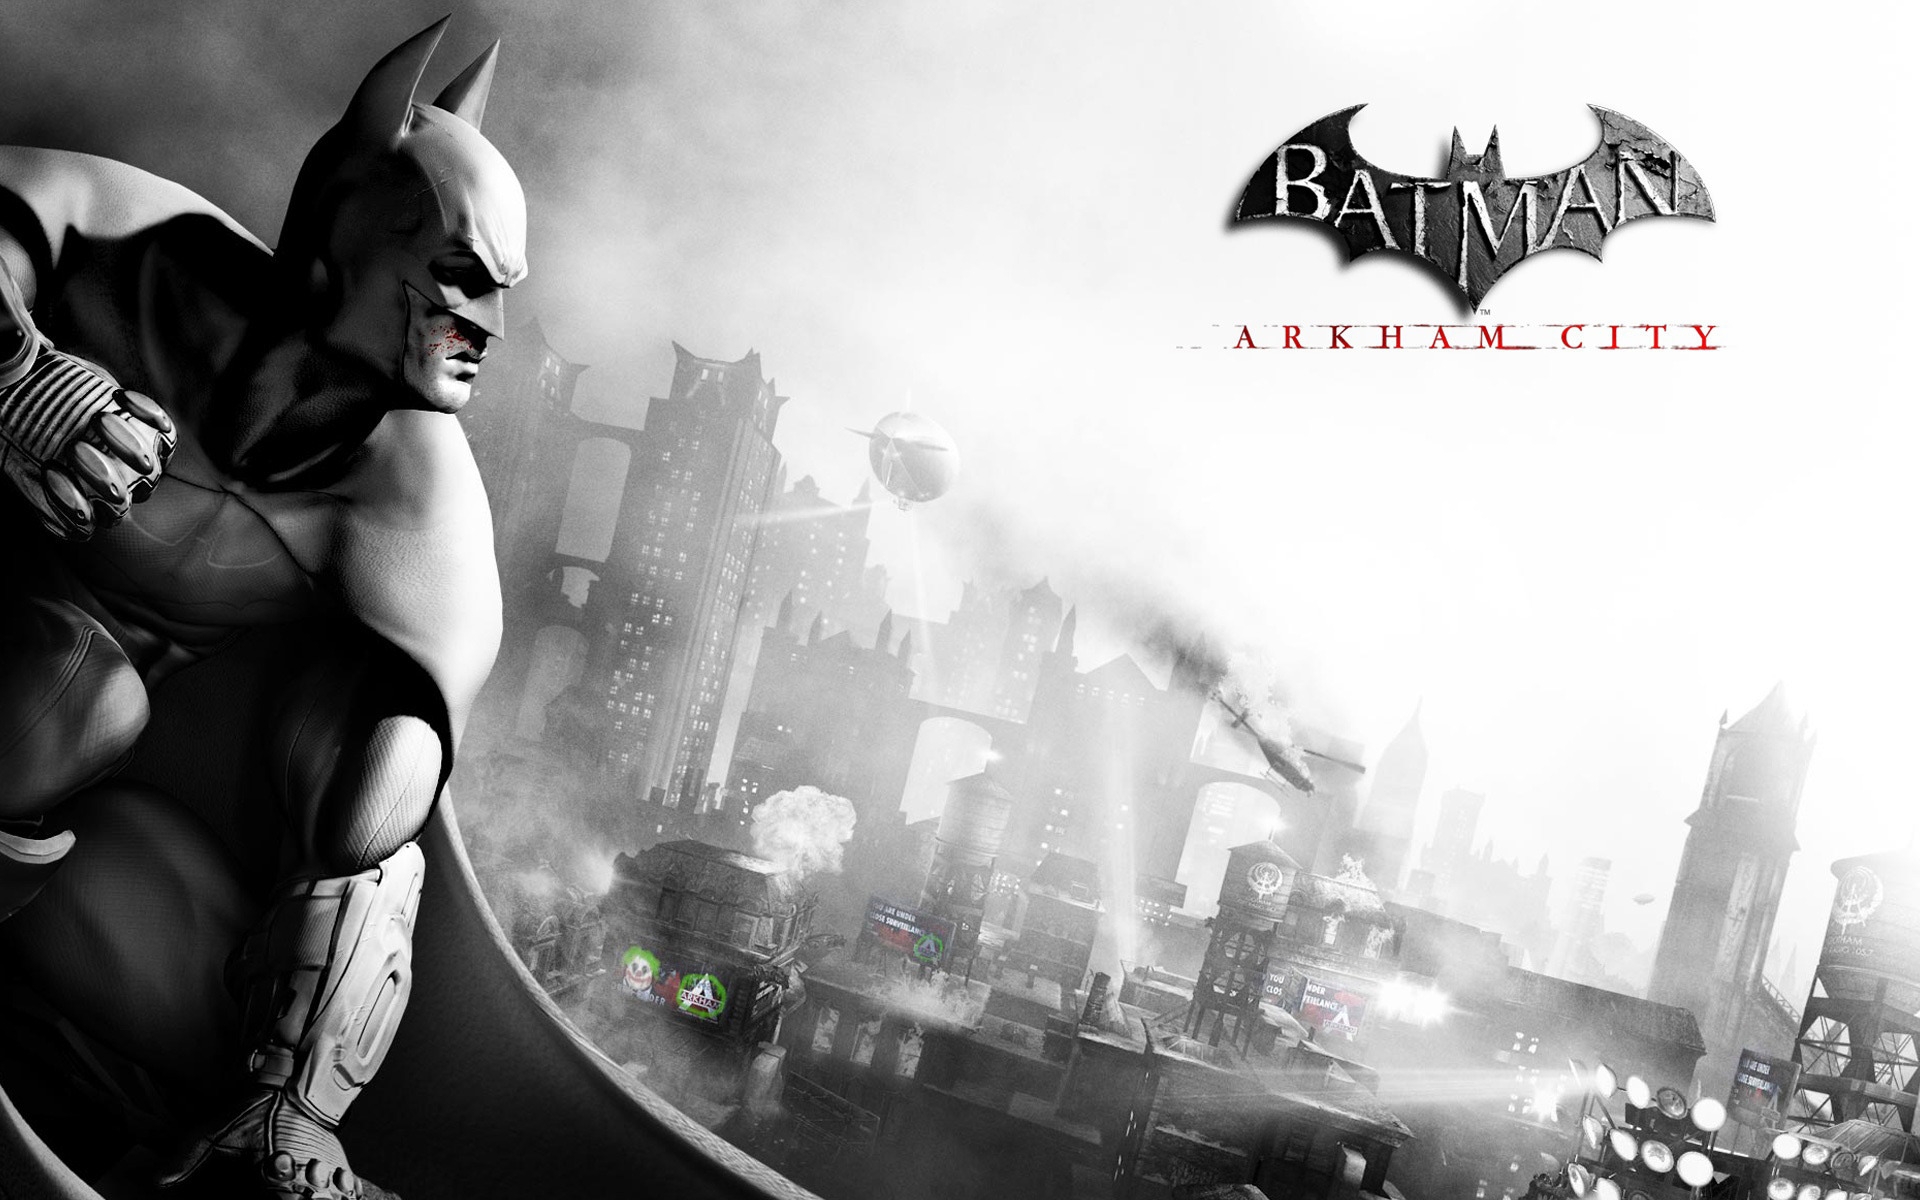 Batman Arkham City for 1920 x 1200 widescreen resolution